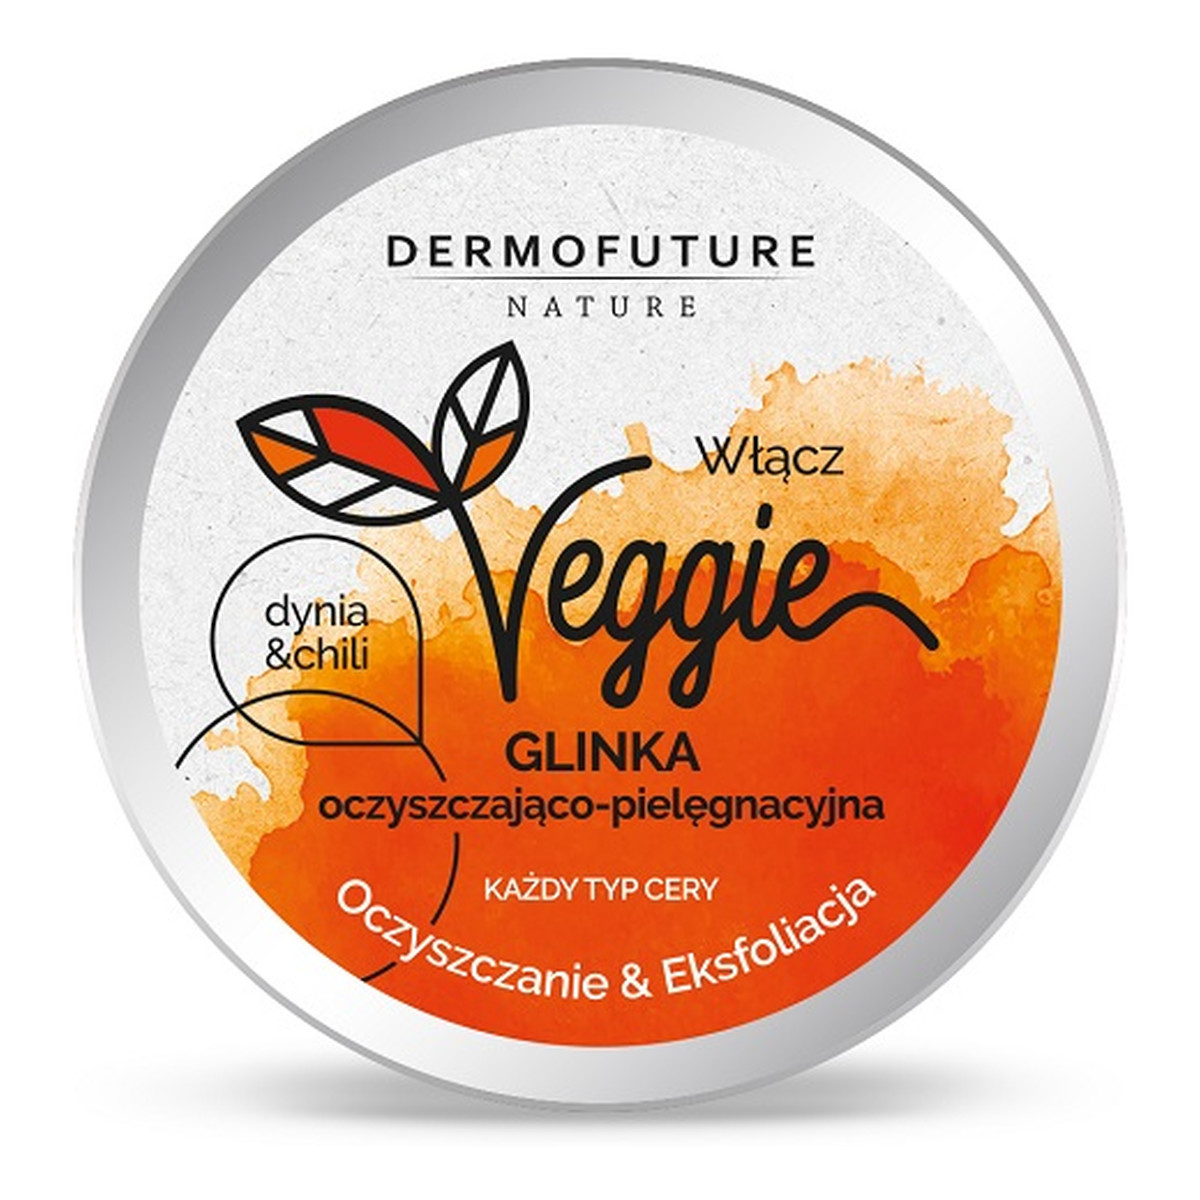 DermoFuture Veggie clay cleansing exfoliating glinka oczyszczająco-pielęgnacyjna każdy typ cery dynia & chili 150ml